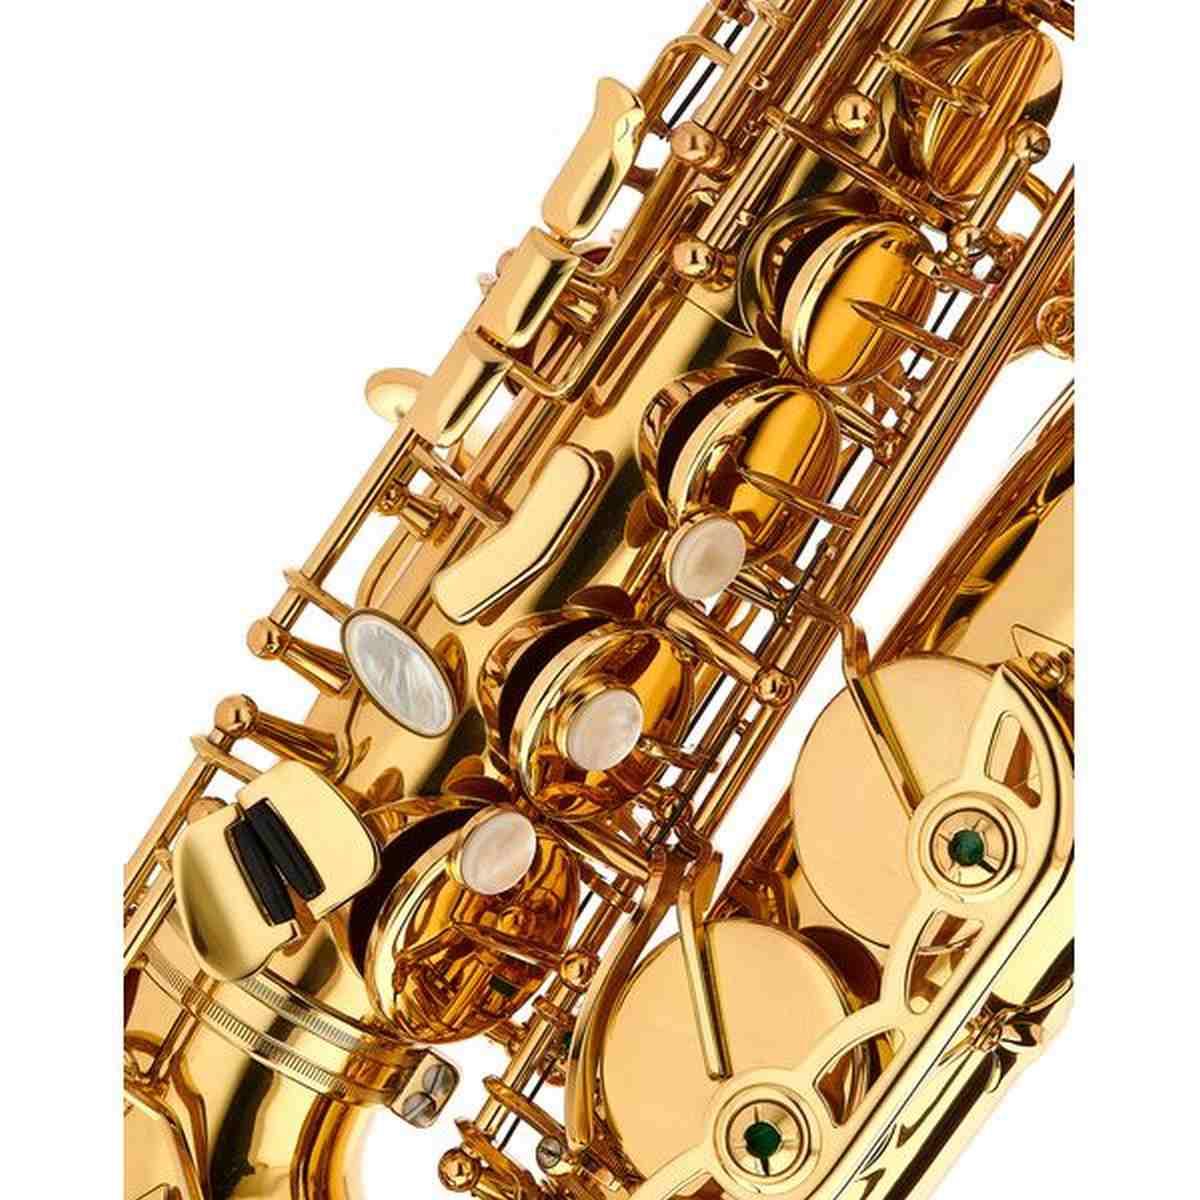 Schagerl  a920l-ii new jubilee edt sax alto